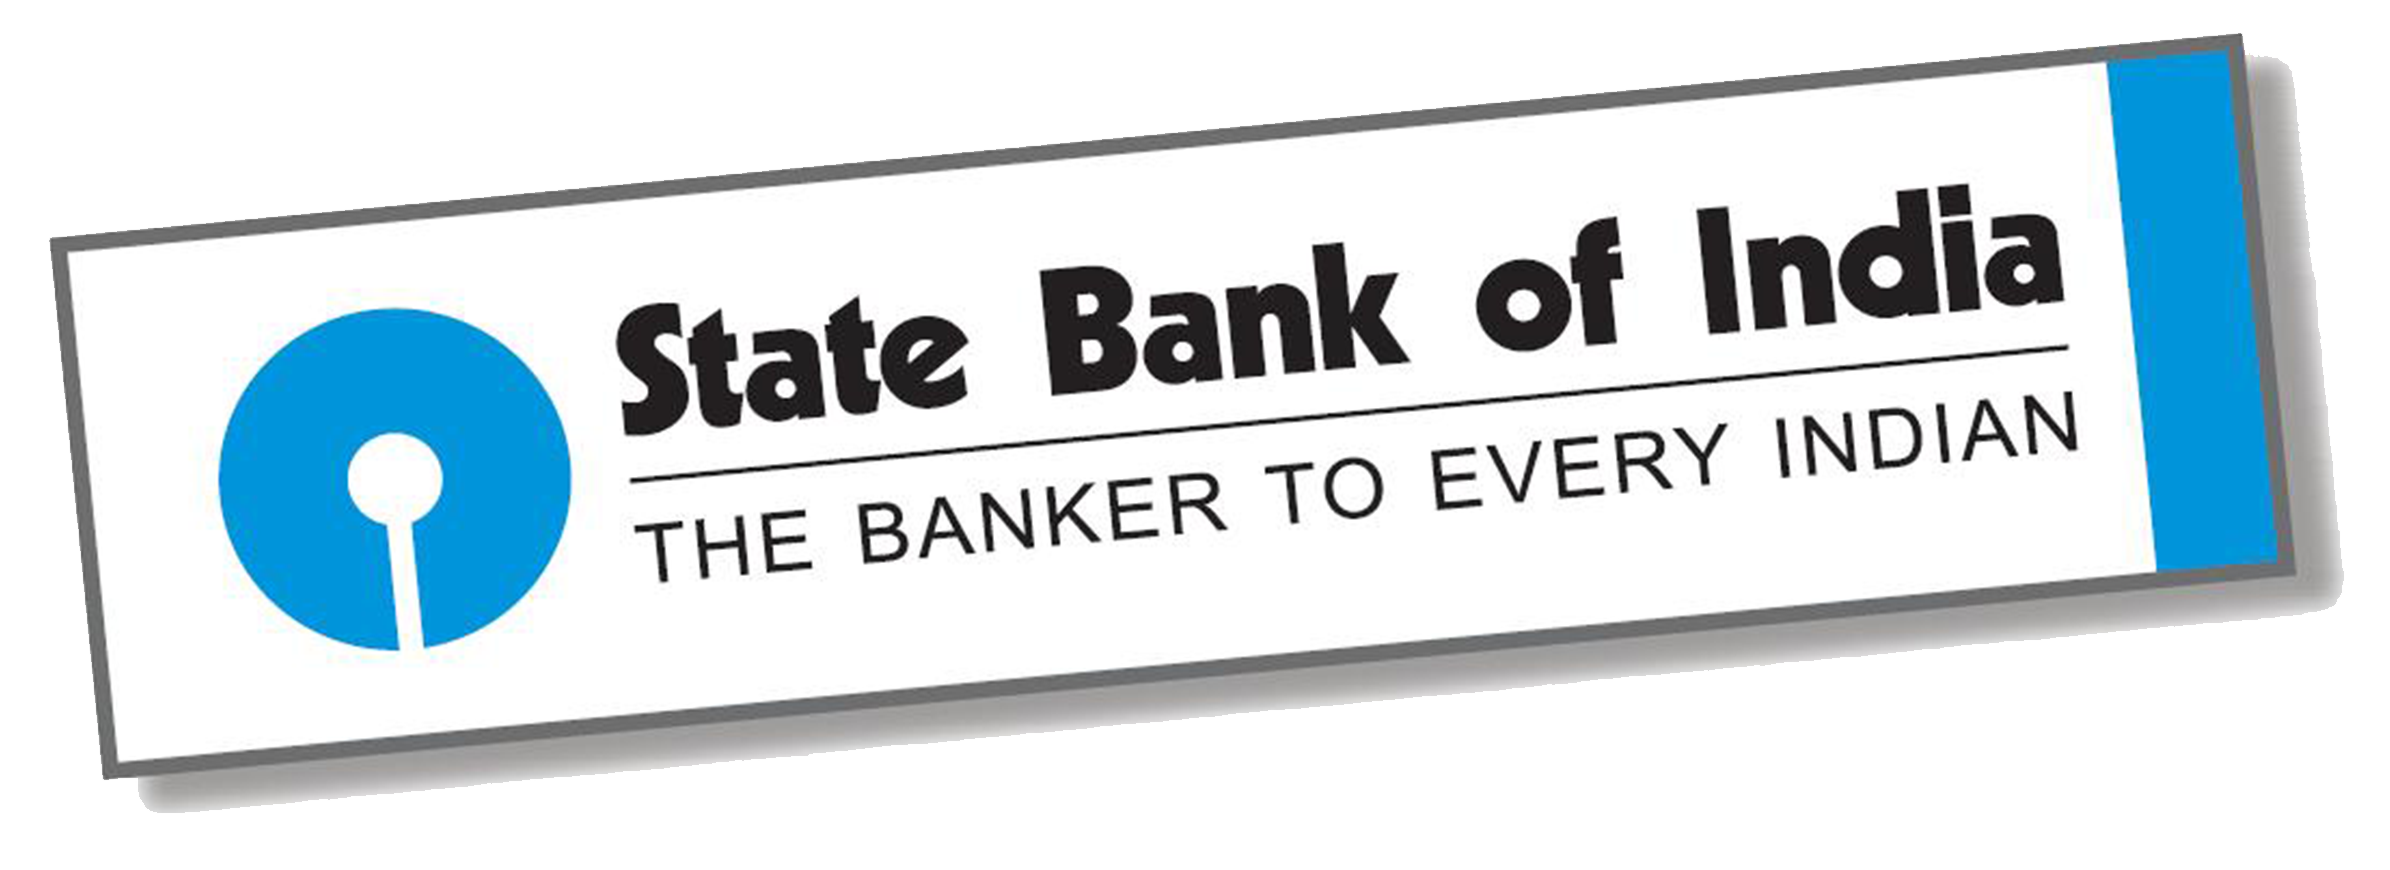 Sbi Logo Png State Bank Of India Logo Transparent Images Free Download Free Transparent Png Logos